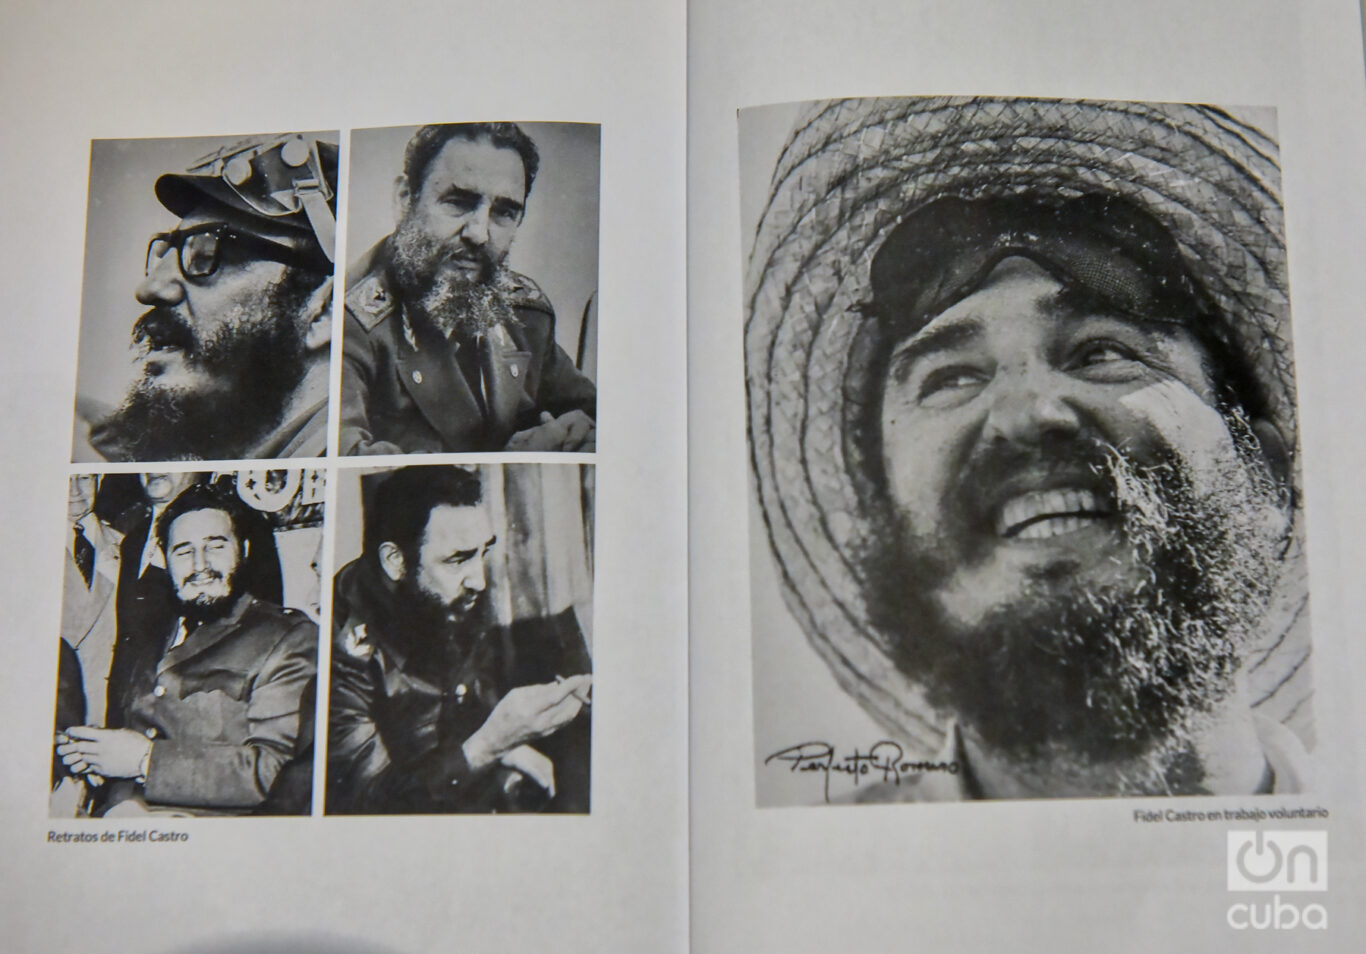 Fidel Castro en los primeros años de la Revolución visto por Romero. Foto: Kaloian.